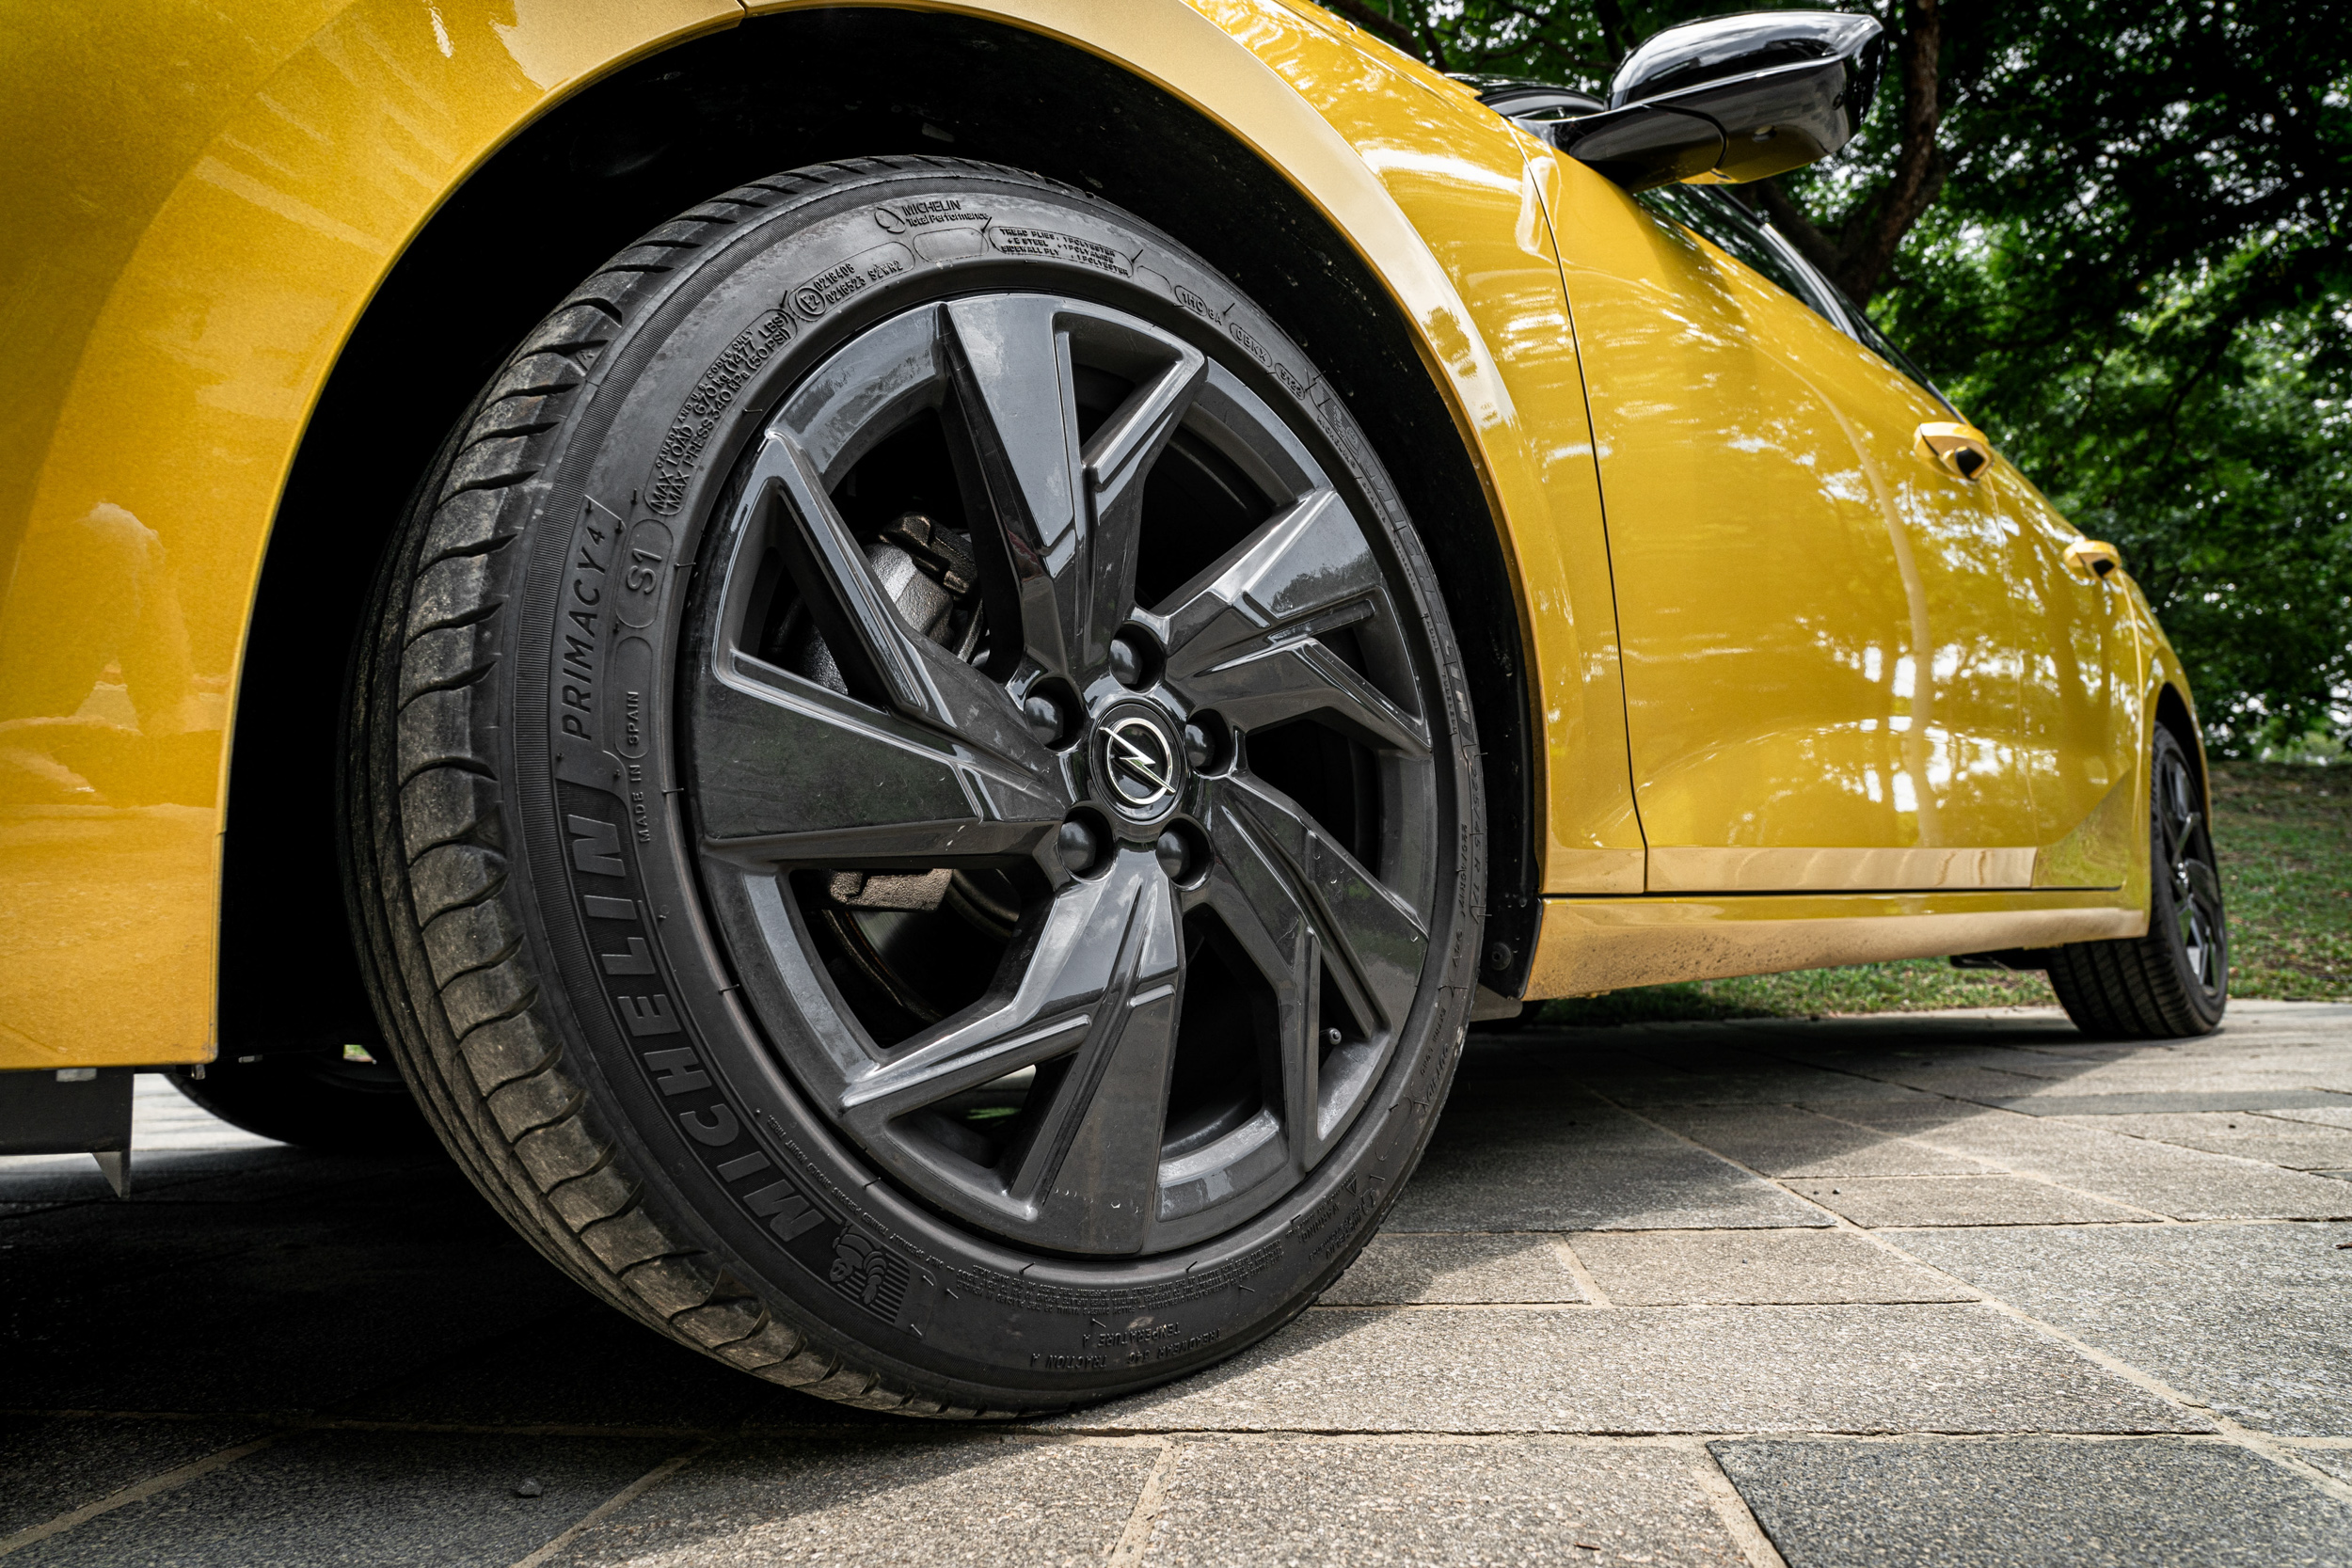 17 吋圈胎組為 GS 潮流款的標準配備。